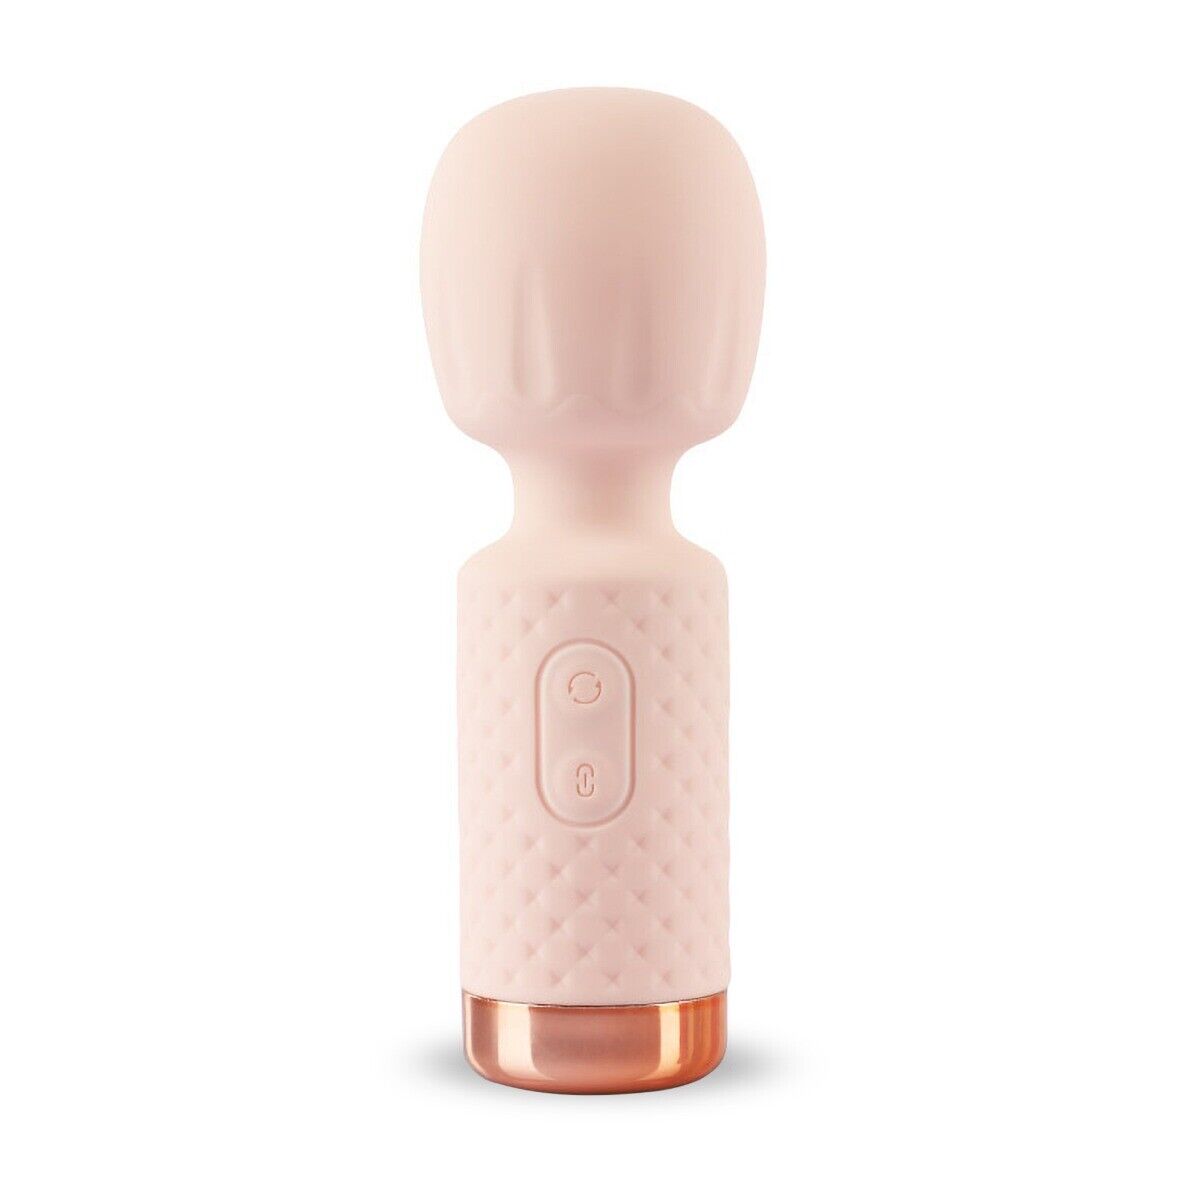 10 Function Mini Silicone Female Body Massager Wand Pocket Travel Vibrator